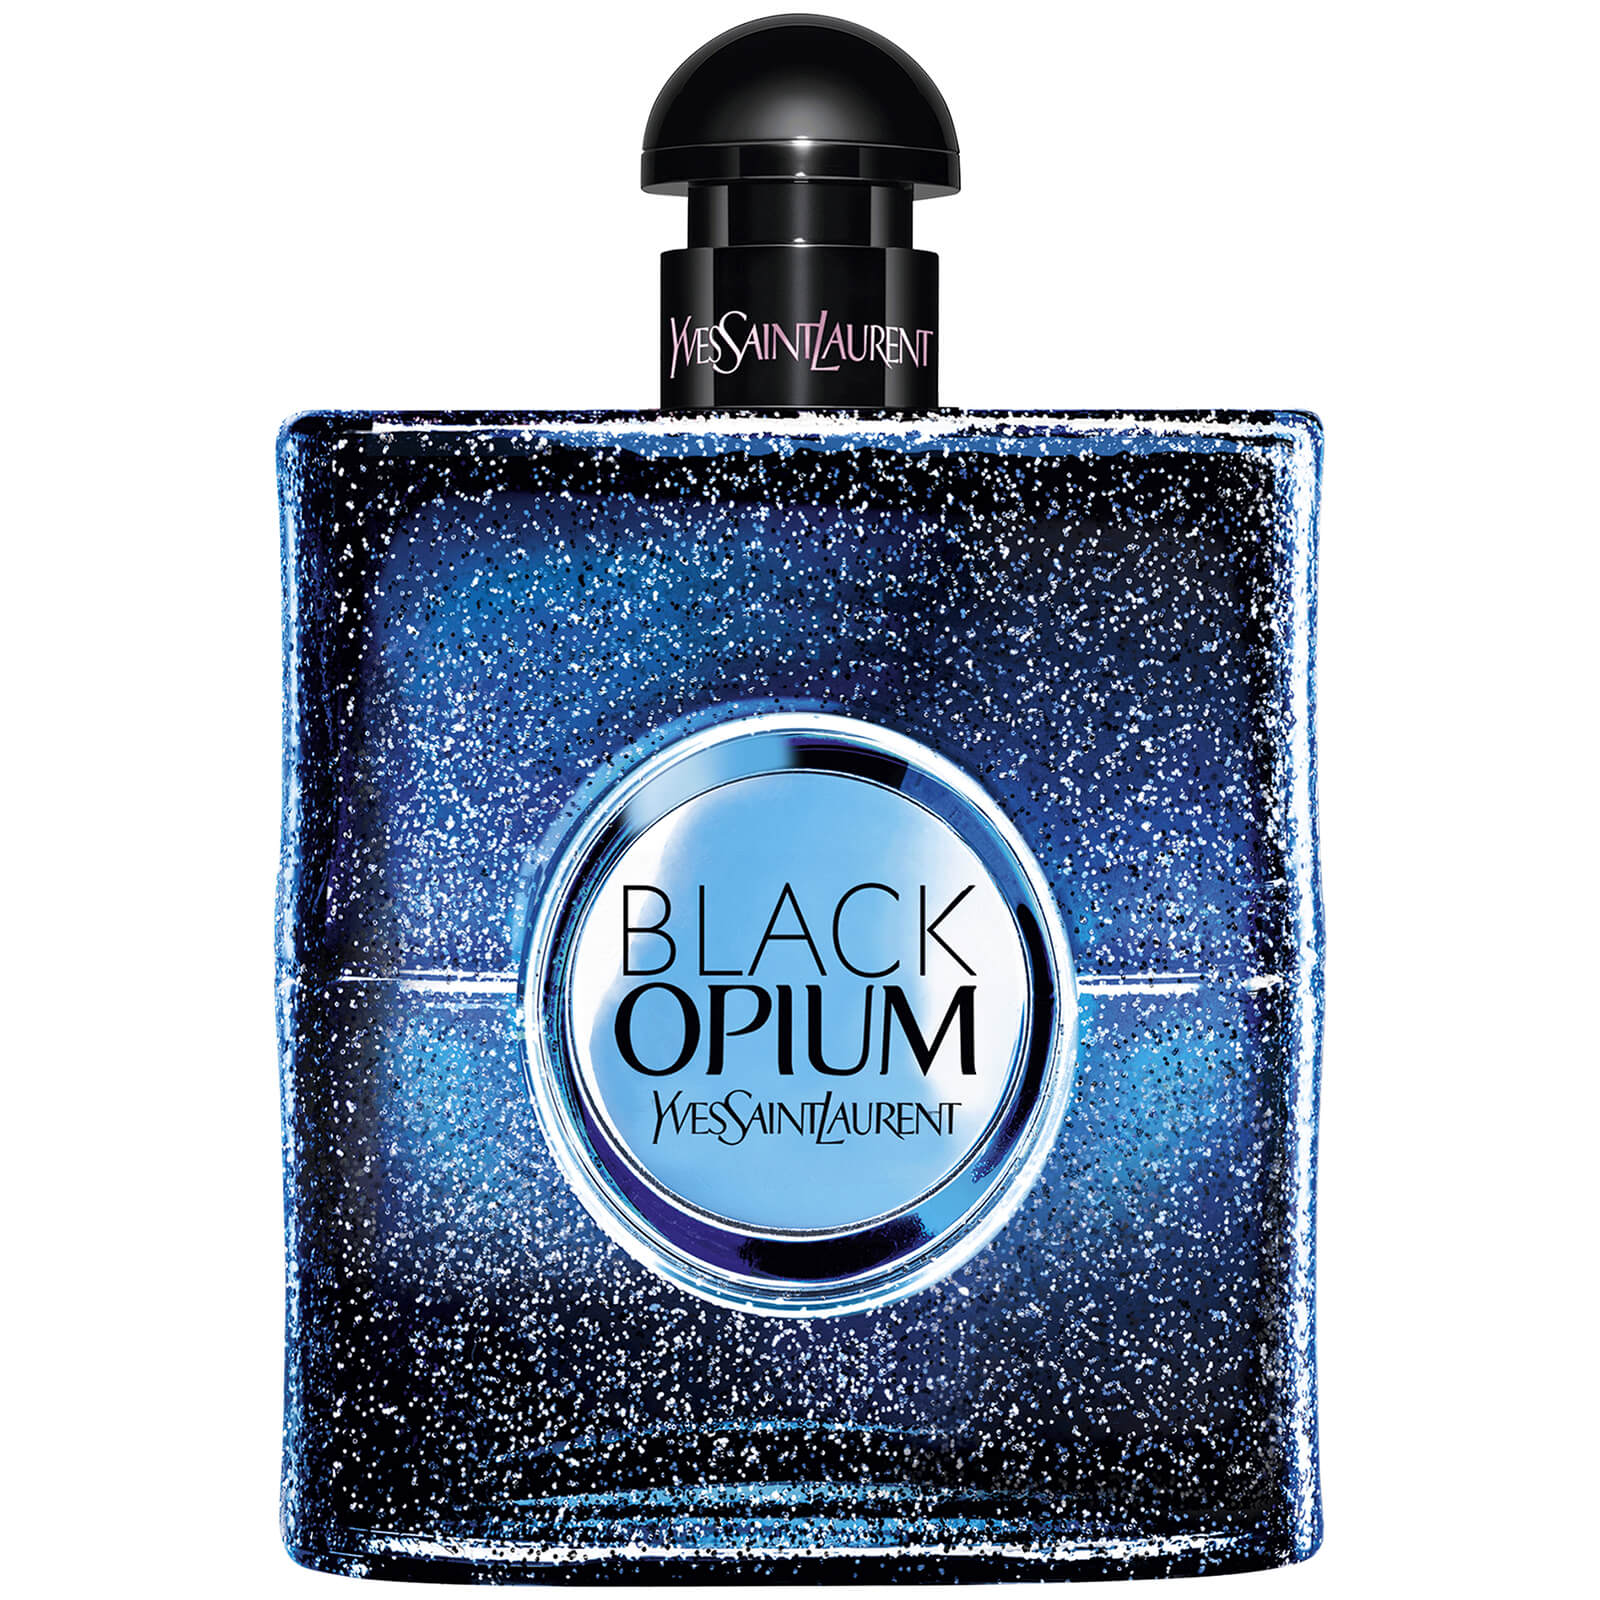 Yves Saint Laurent Black Opium Intense Eau de Parfum (Various Sizes) - 90ml